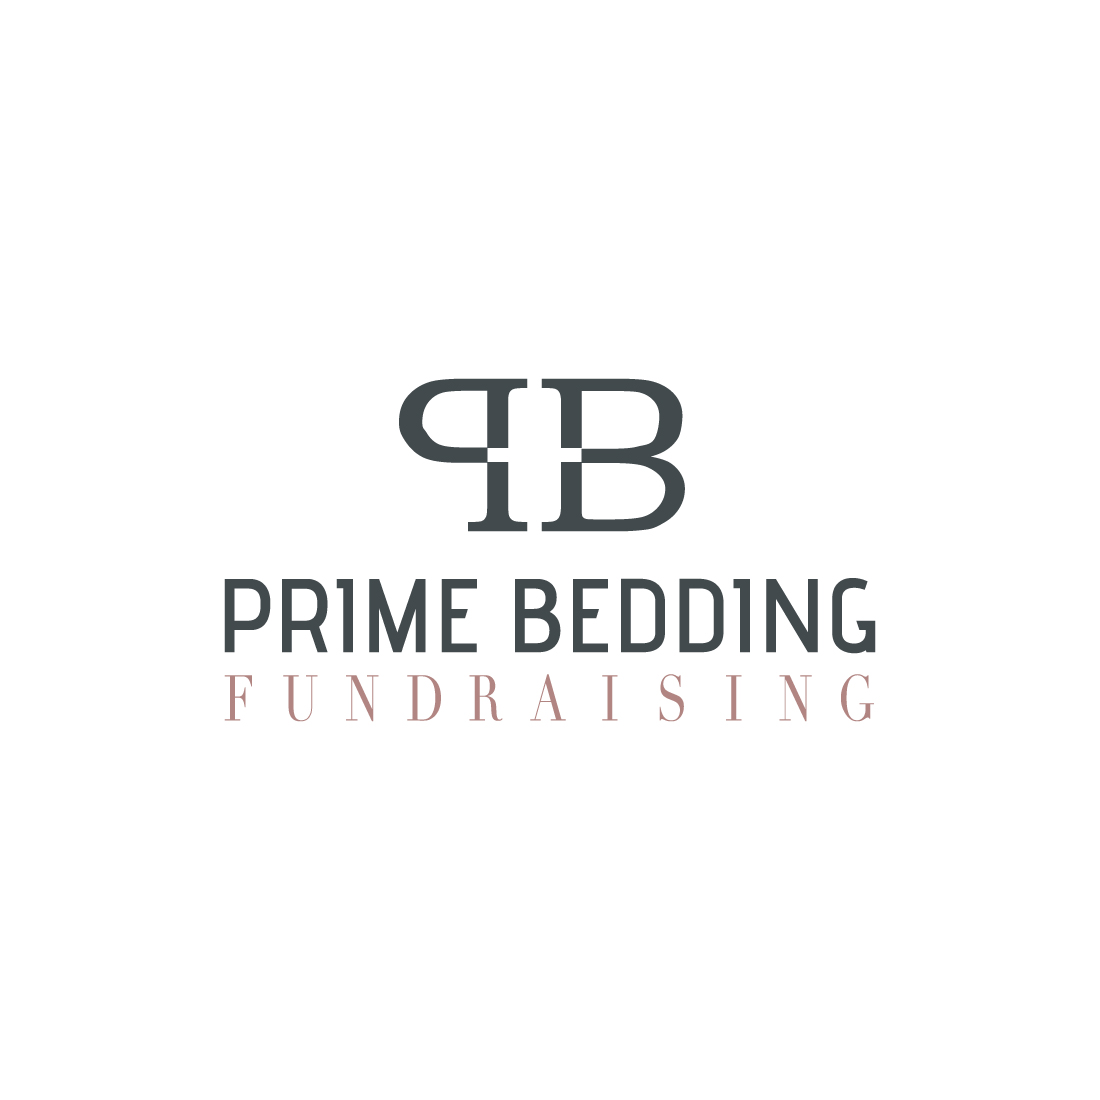 Prime Bedding